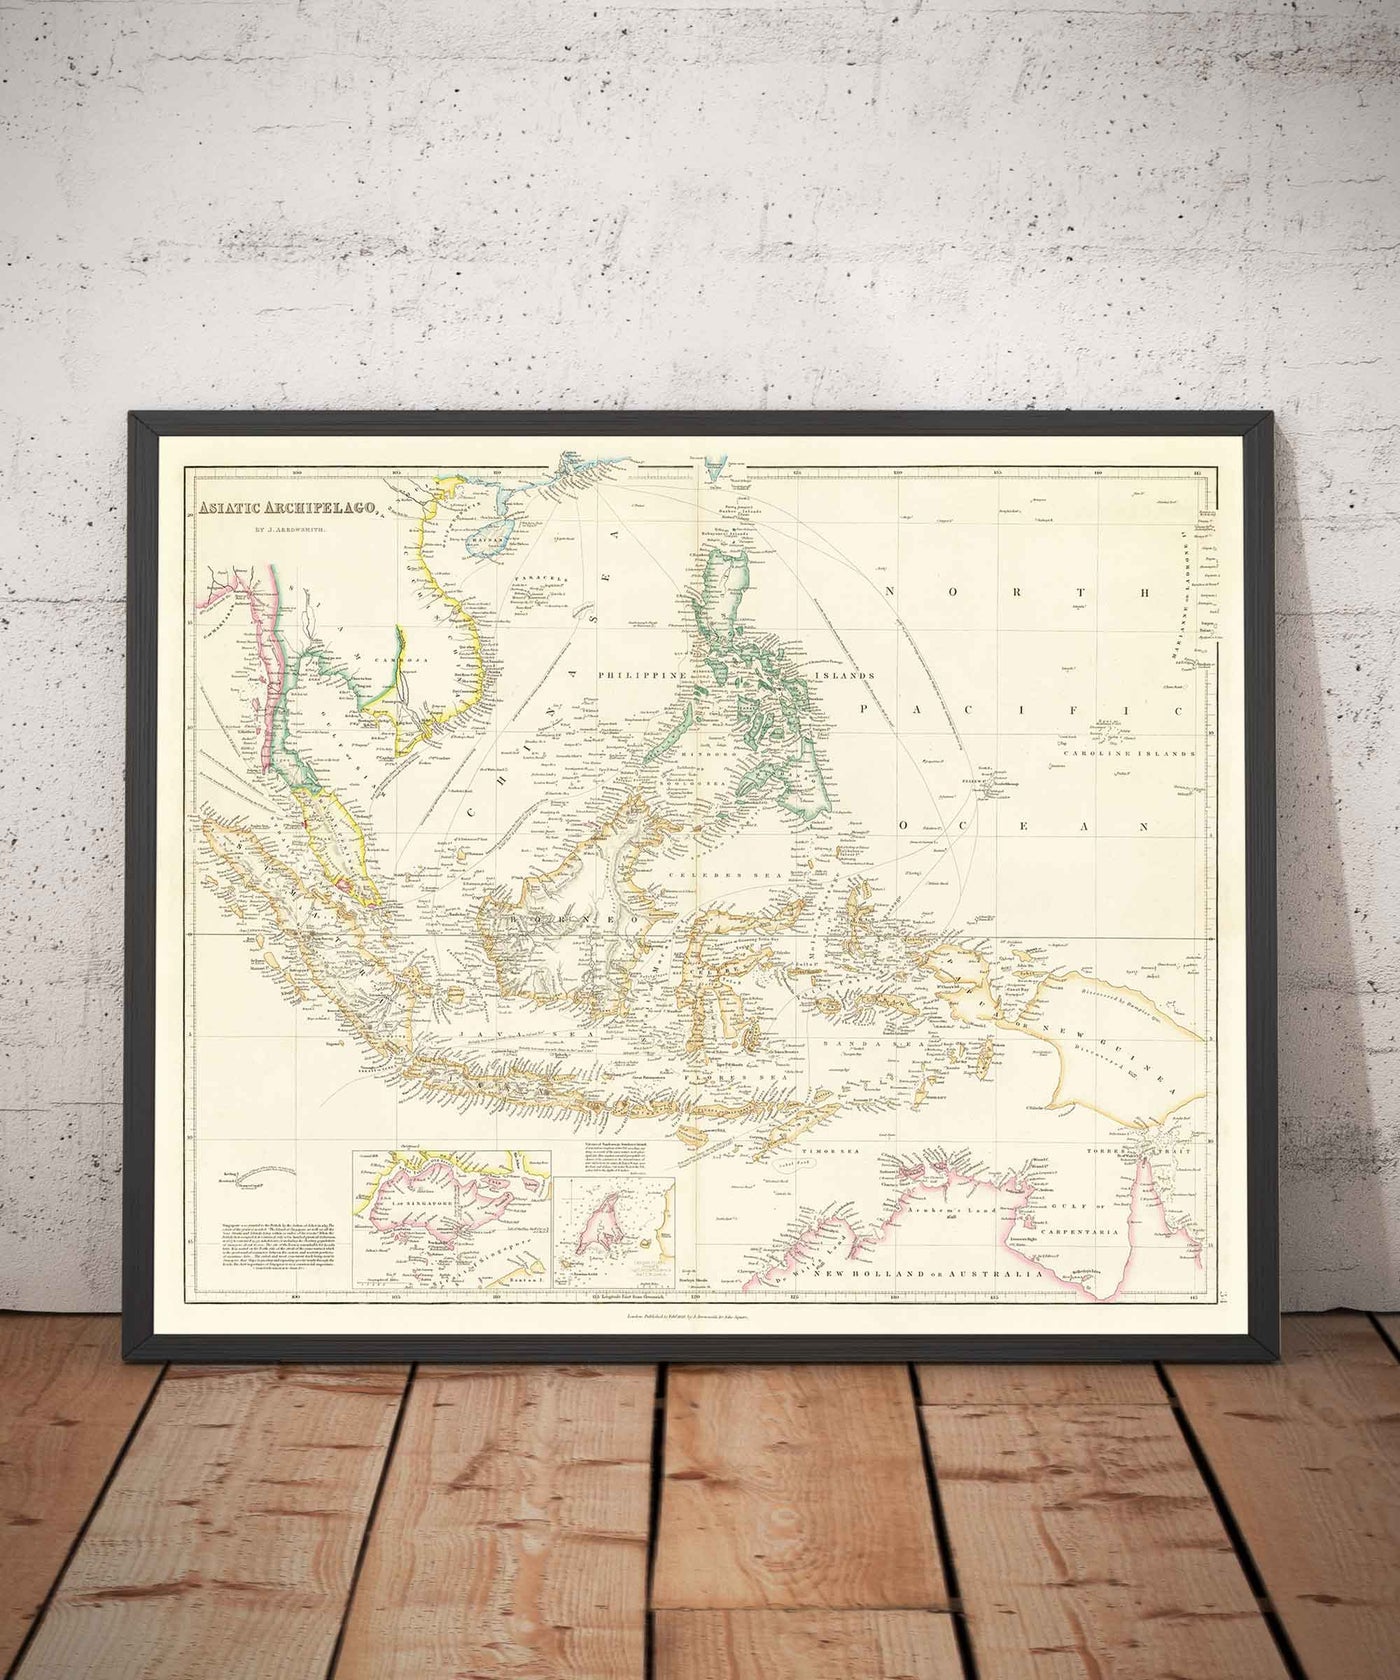 Ancienne carte de l'archipel malais et des Indes orientales par Arrowsmith, 1859 - Asie du Sud-Est, Philippines, îles, détroits, Singapour